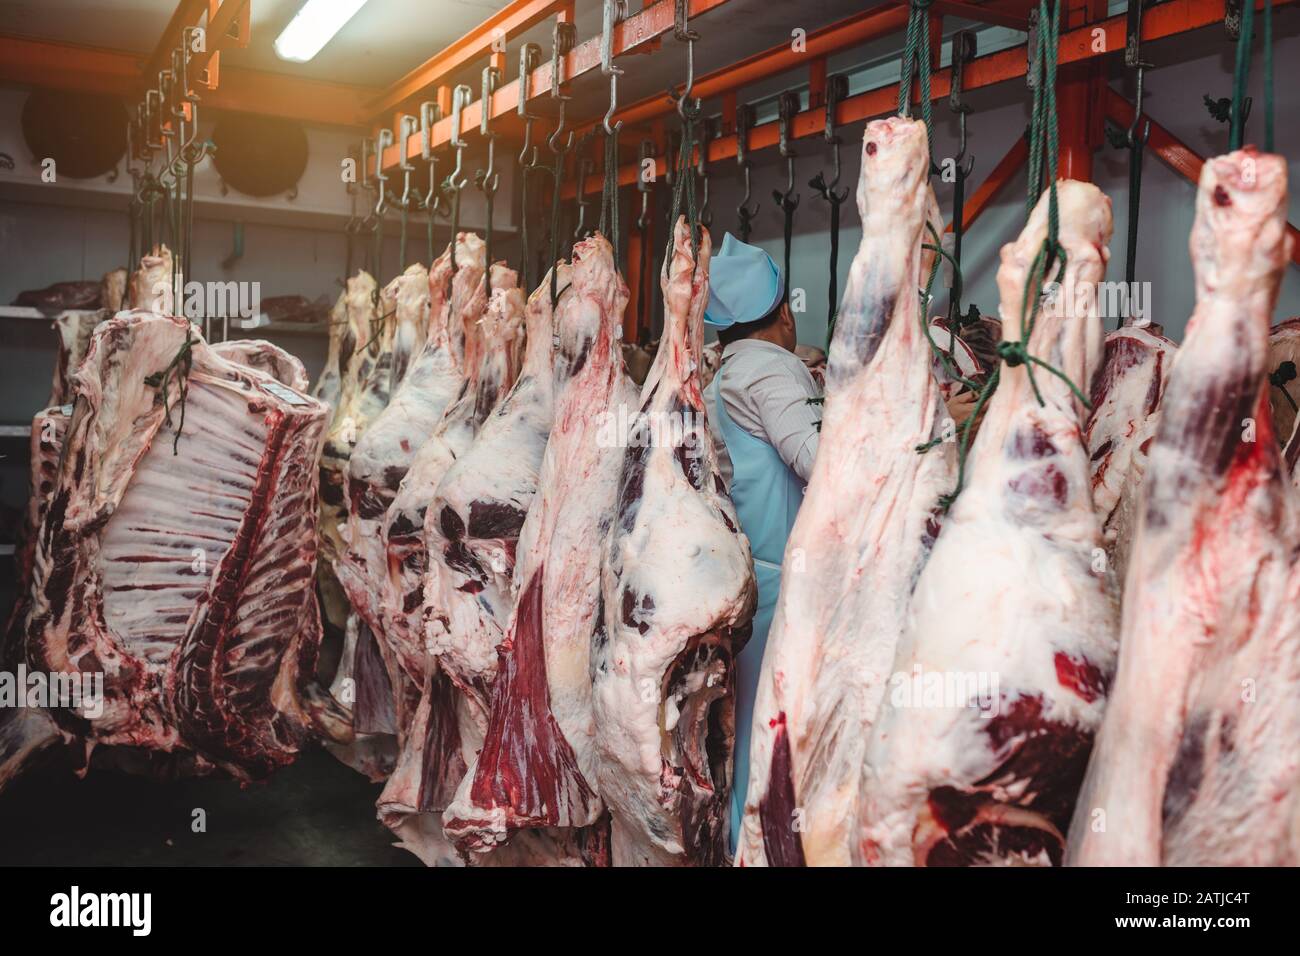 Carne de graneros o habitaciones frías para mantener la carne de vacuno de buena calidad de una carnicería. Foto de stock